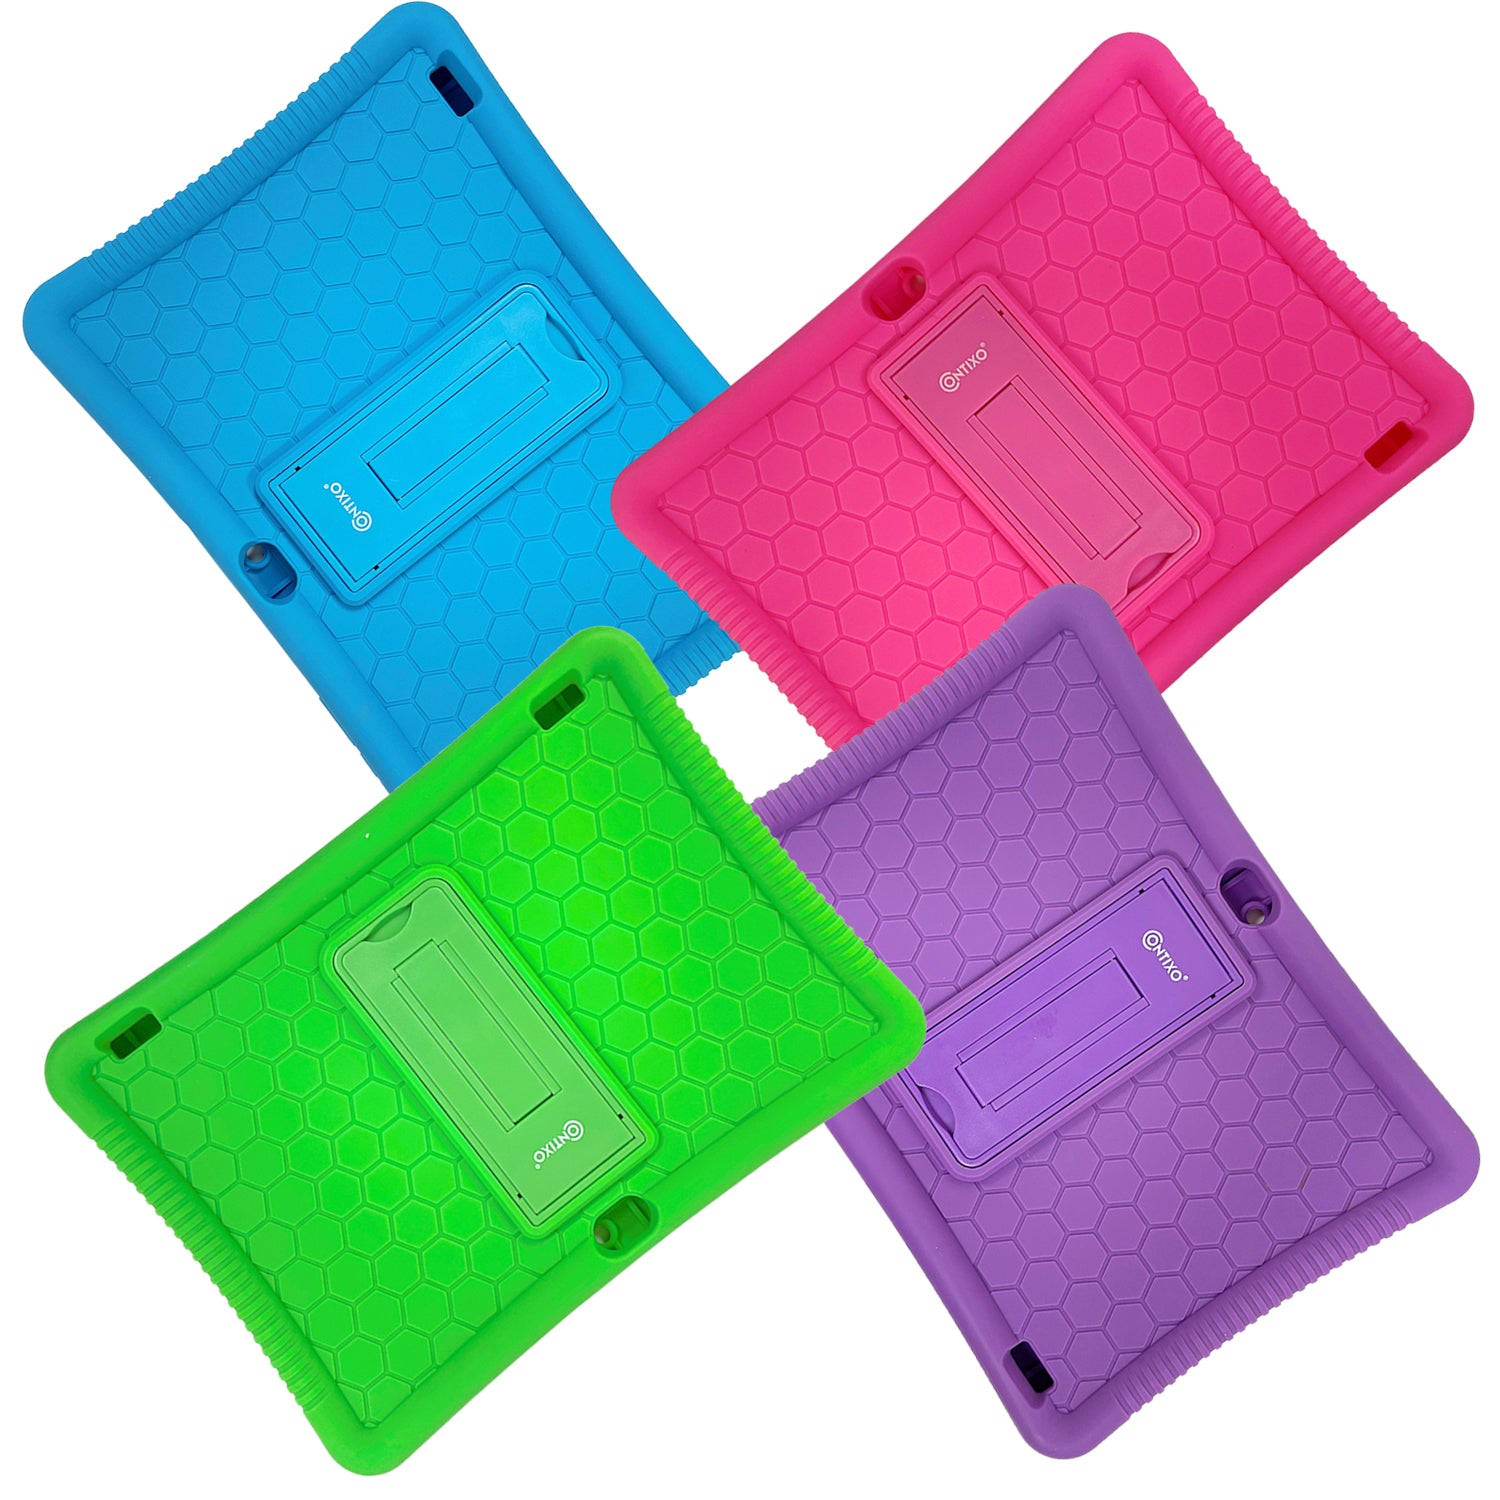 Contixo K102 Kids Tablet -Protective Silicone Case, Multi-Color